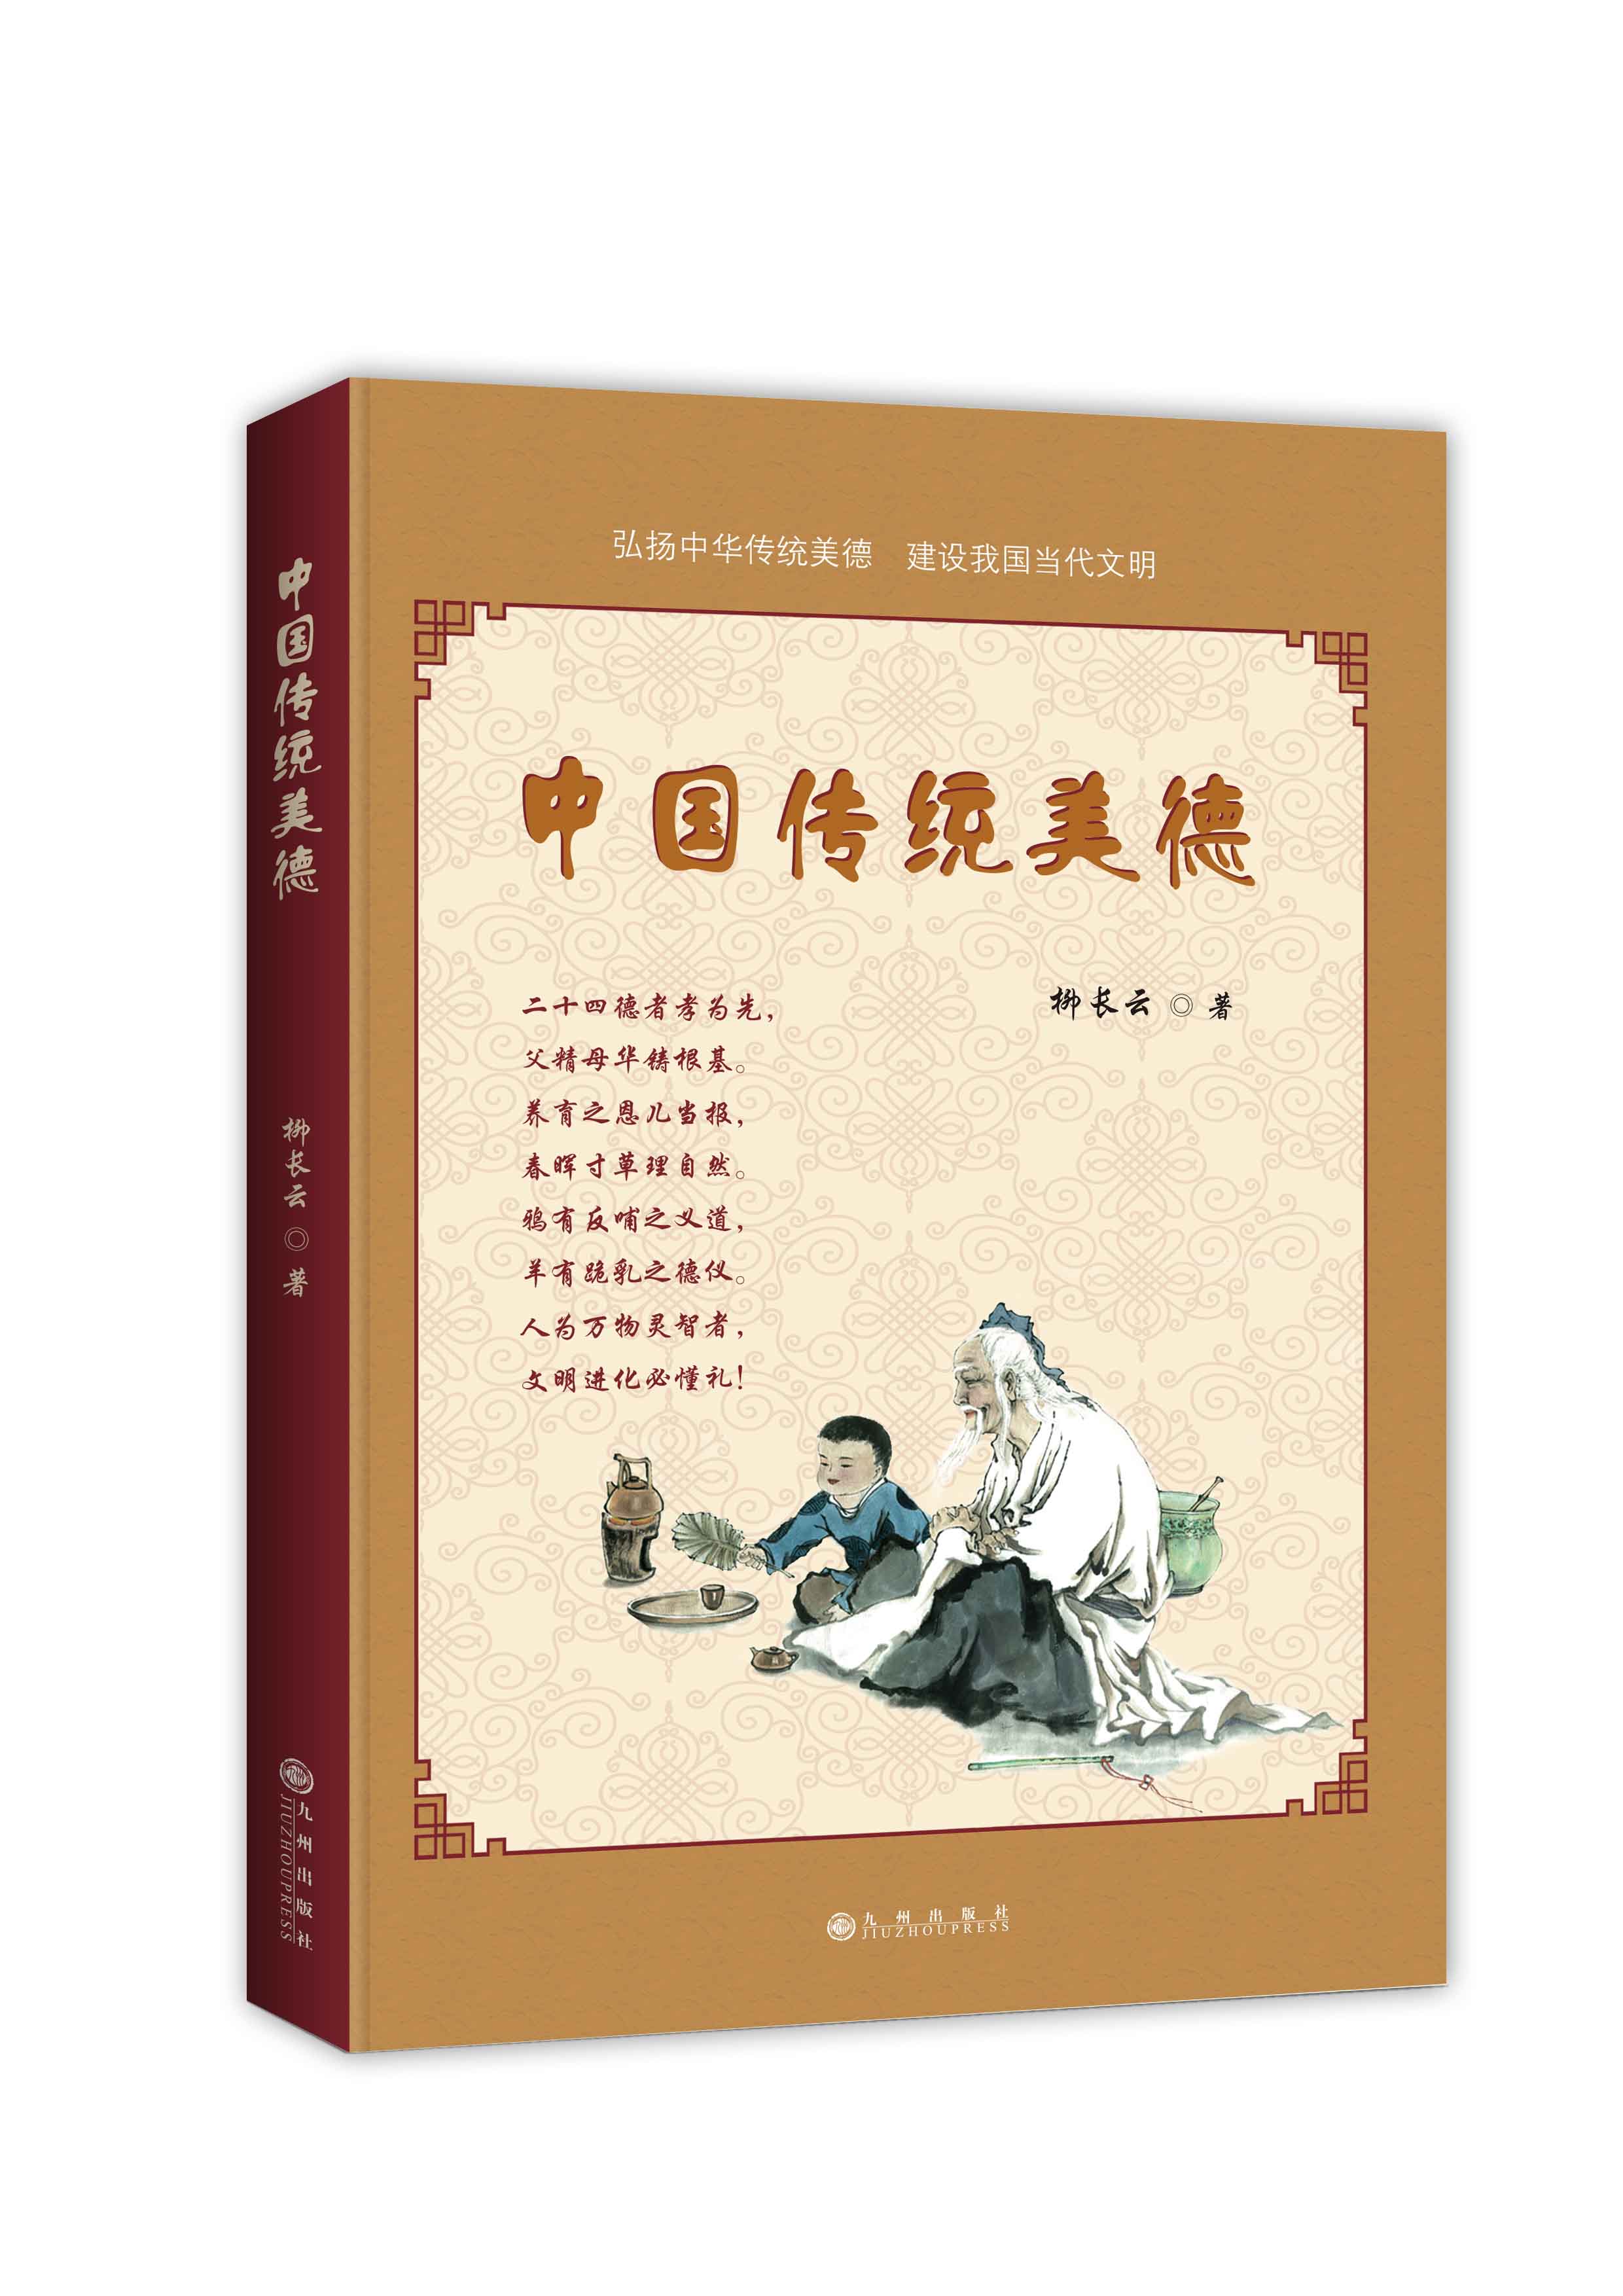 中國傳統美德(2016年出版書籍)